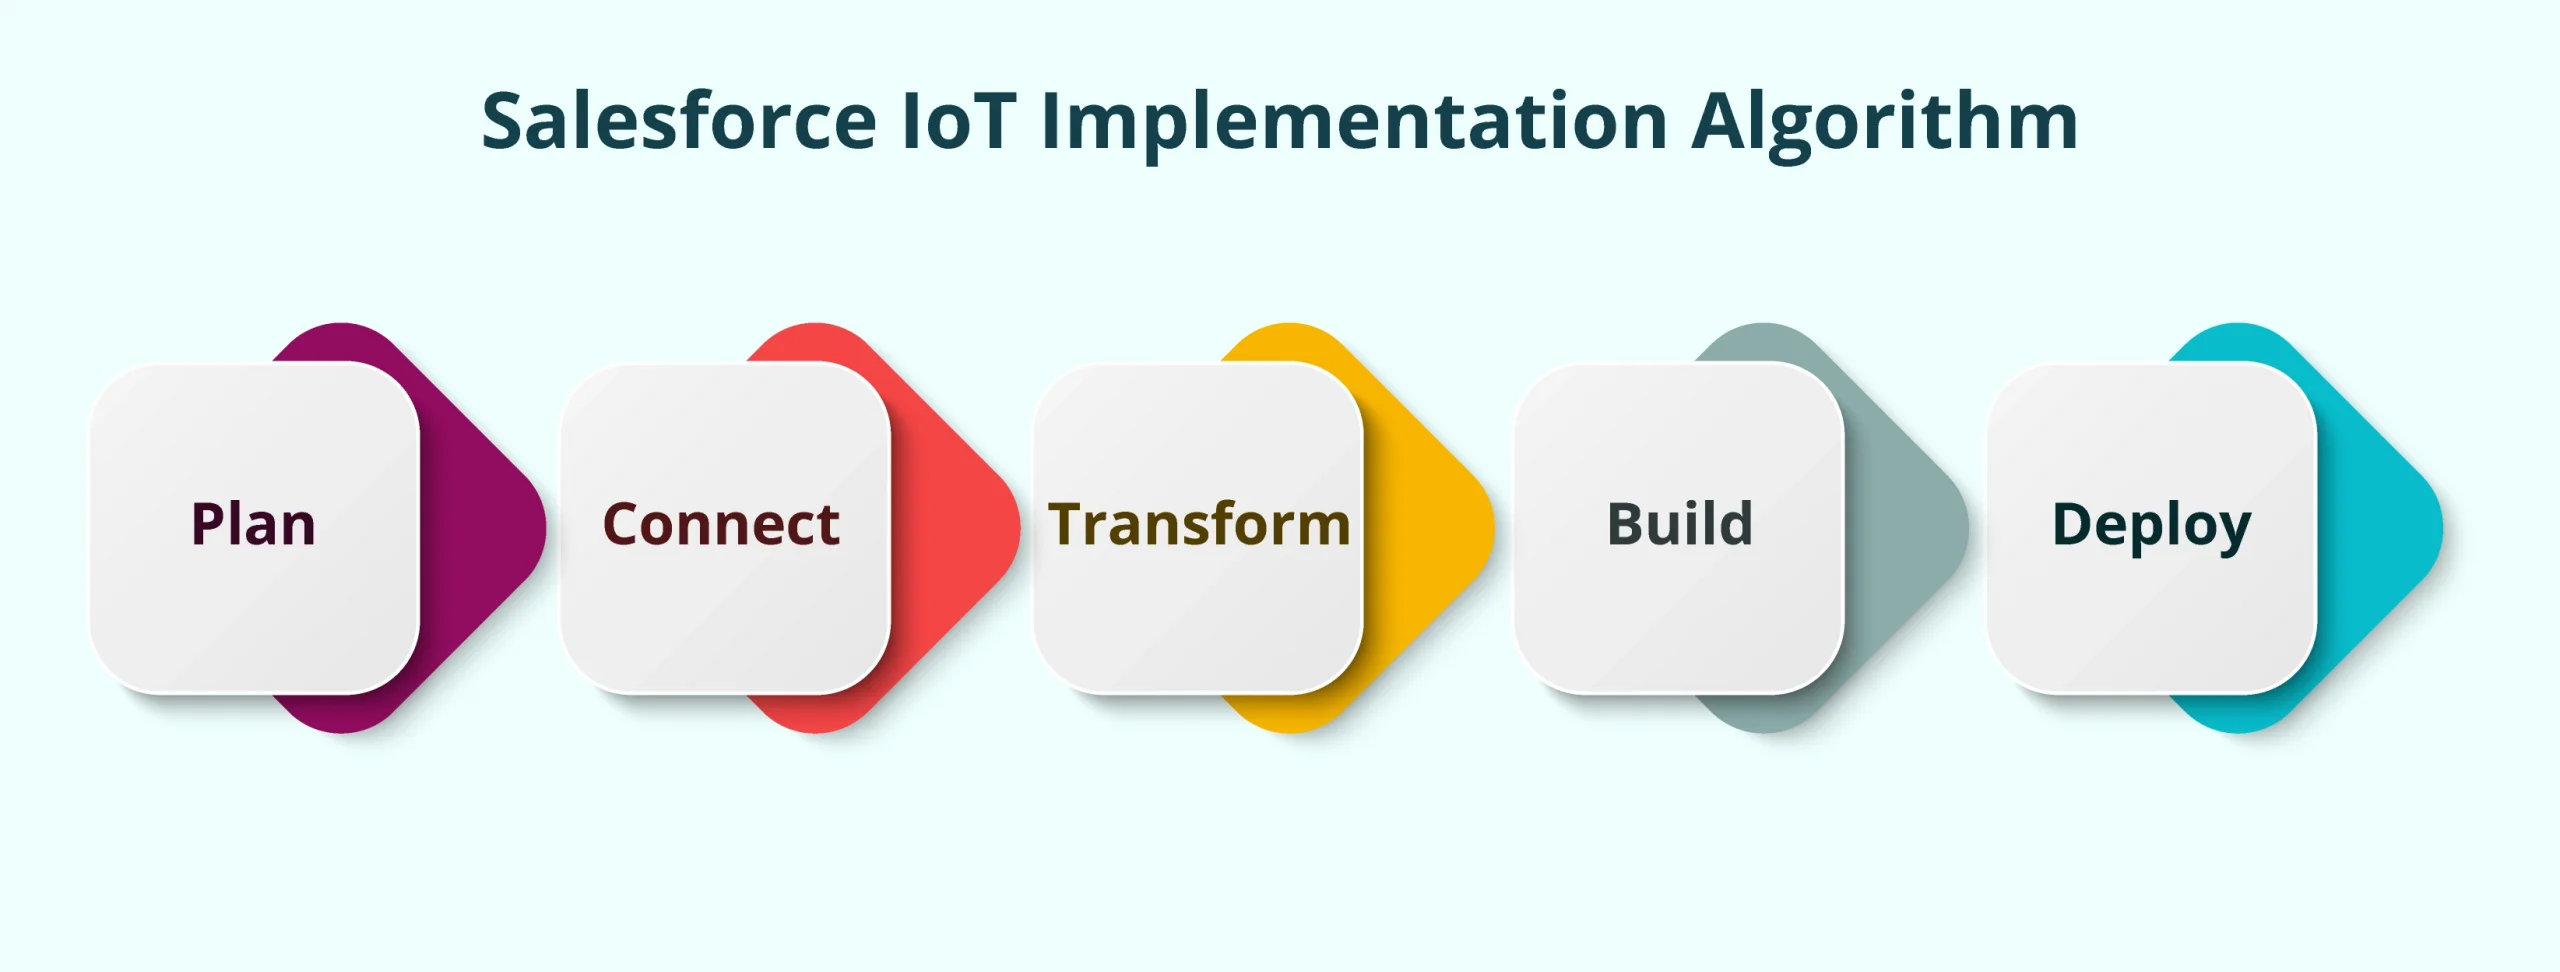 Salesforce-IOT-Implementation-Algorithm